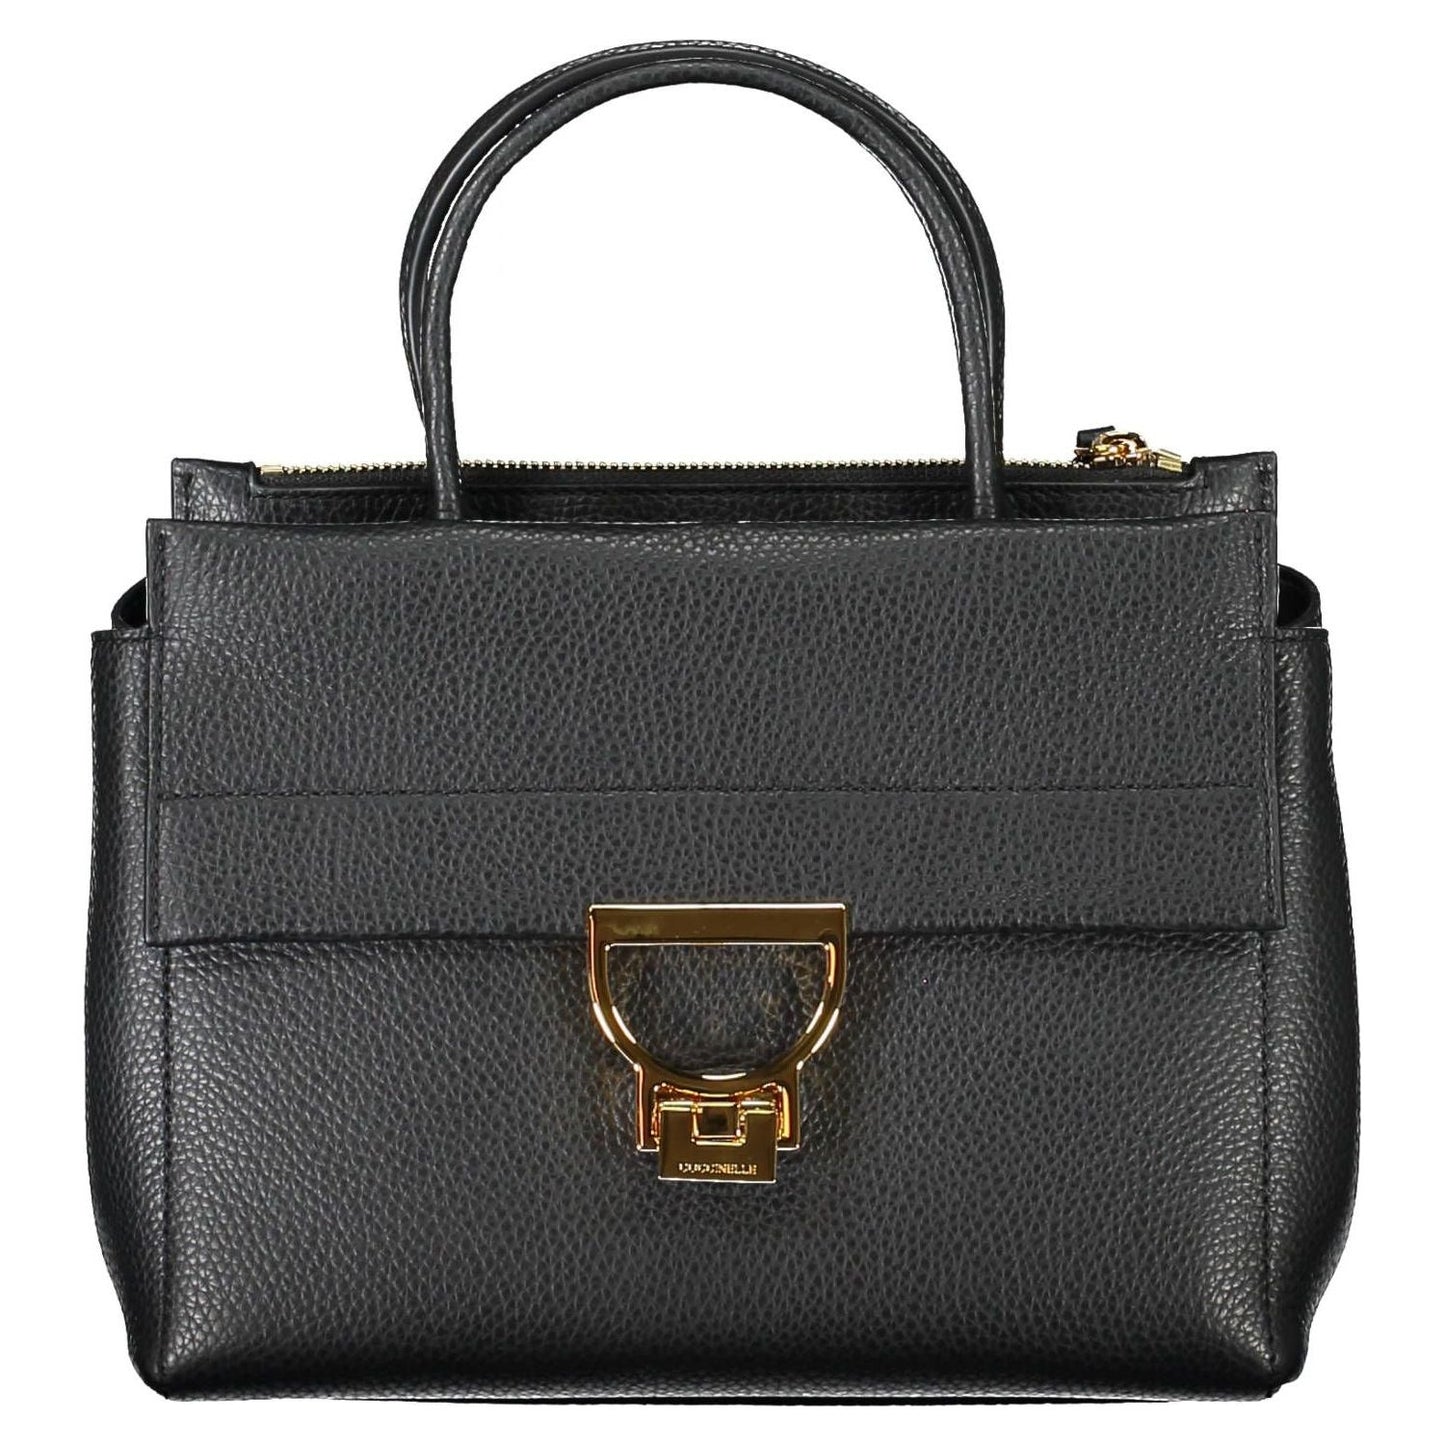 Coccinelle | Elegant Black Leather Handbag With Versatile Straps| McRichard Designer Brands   